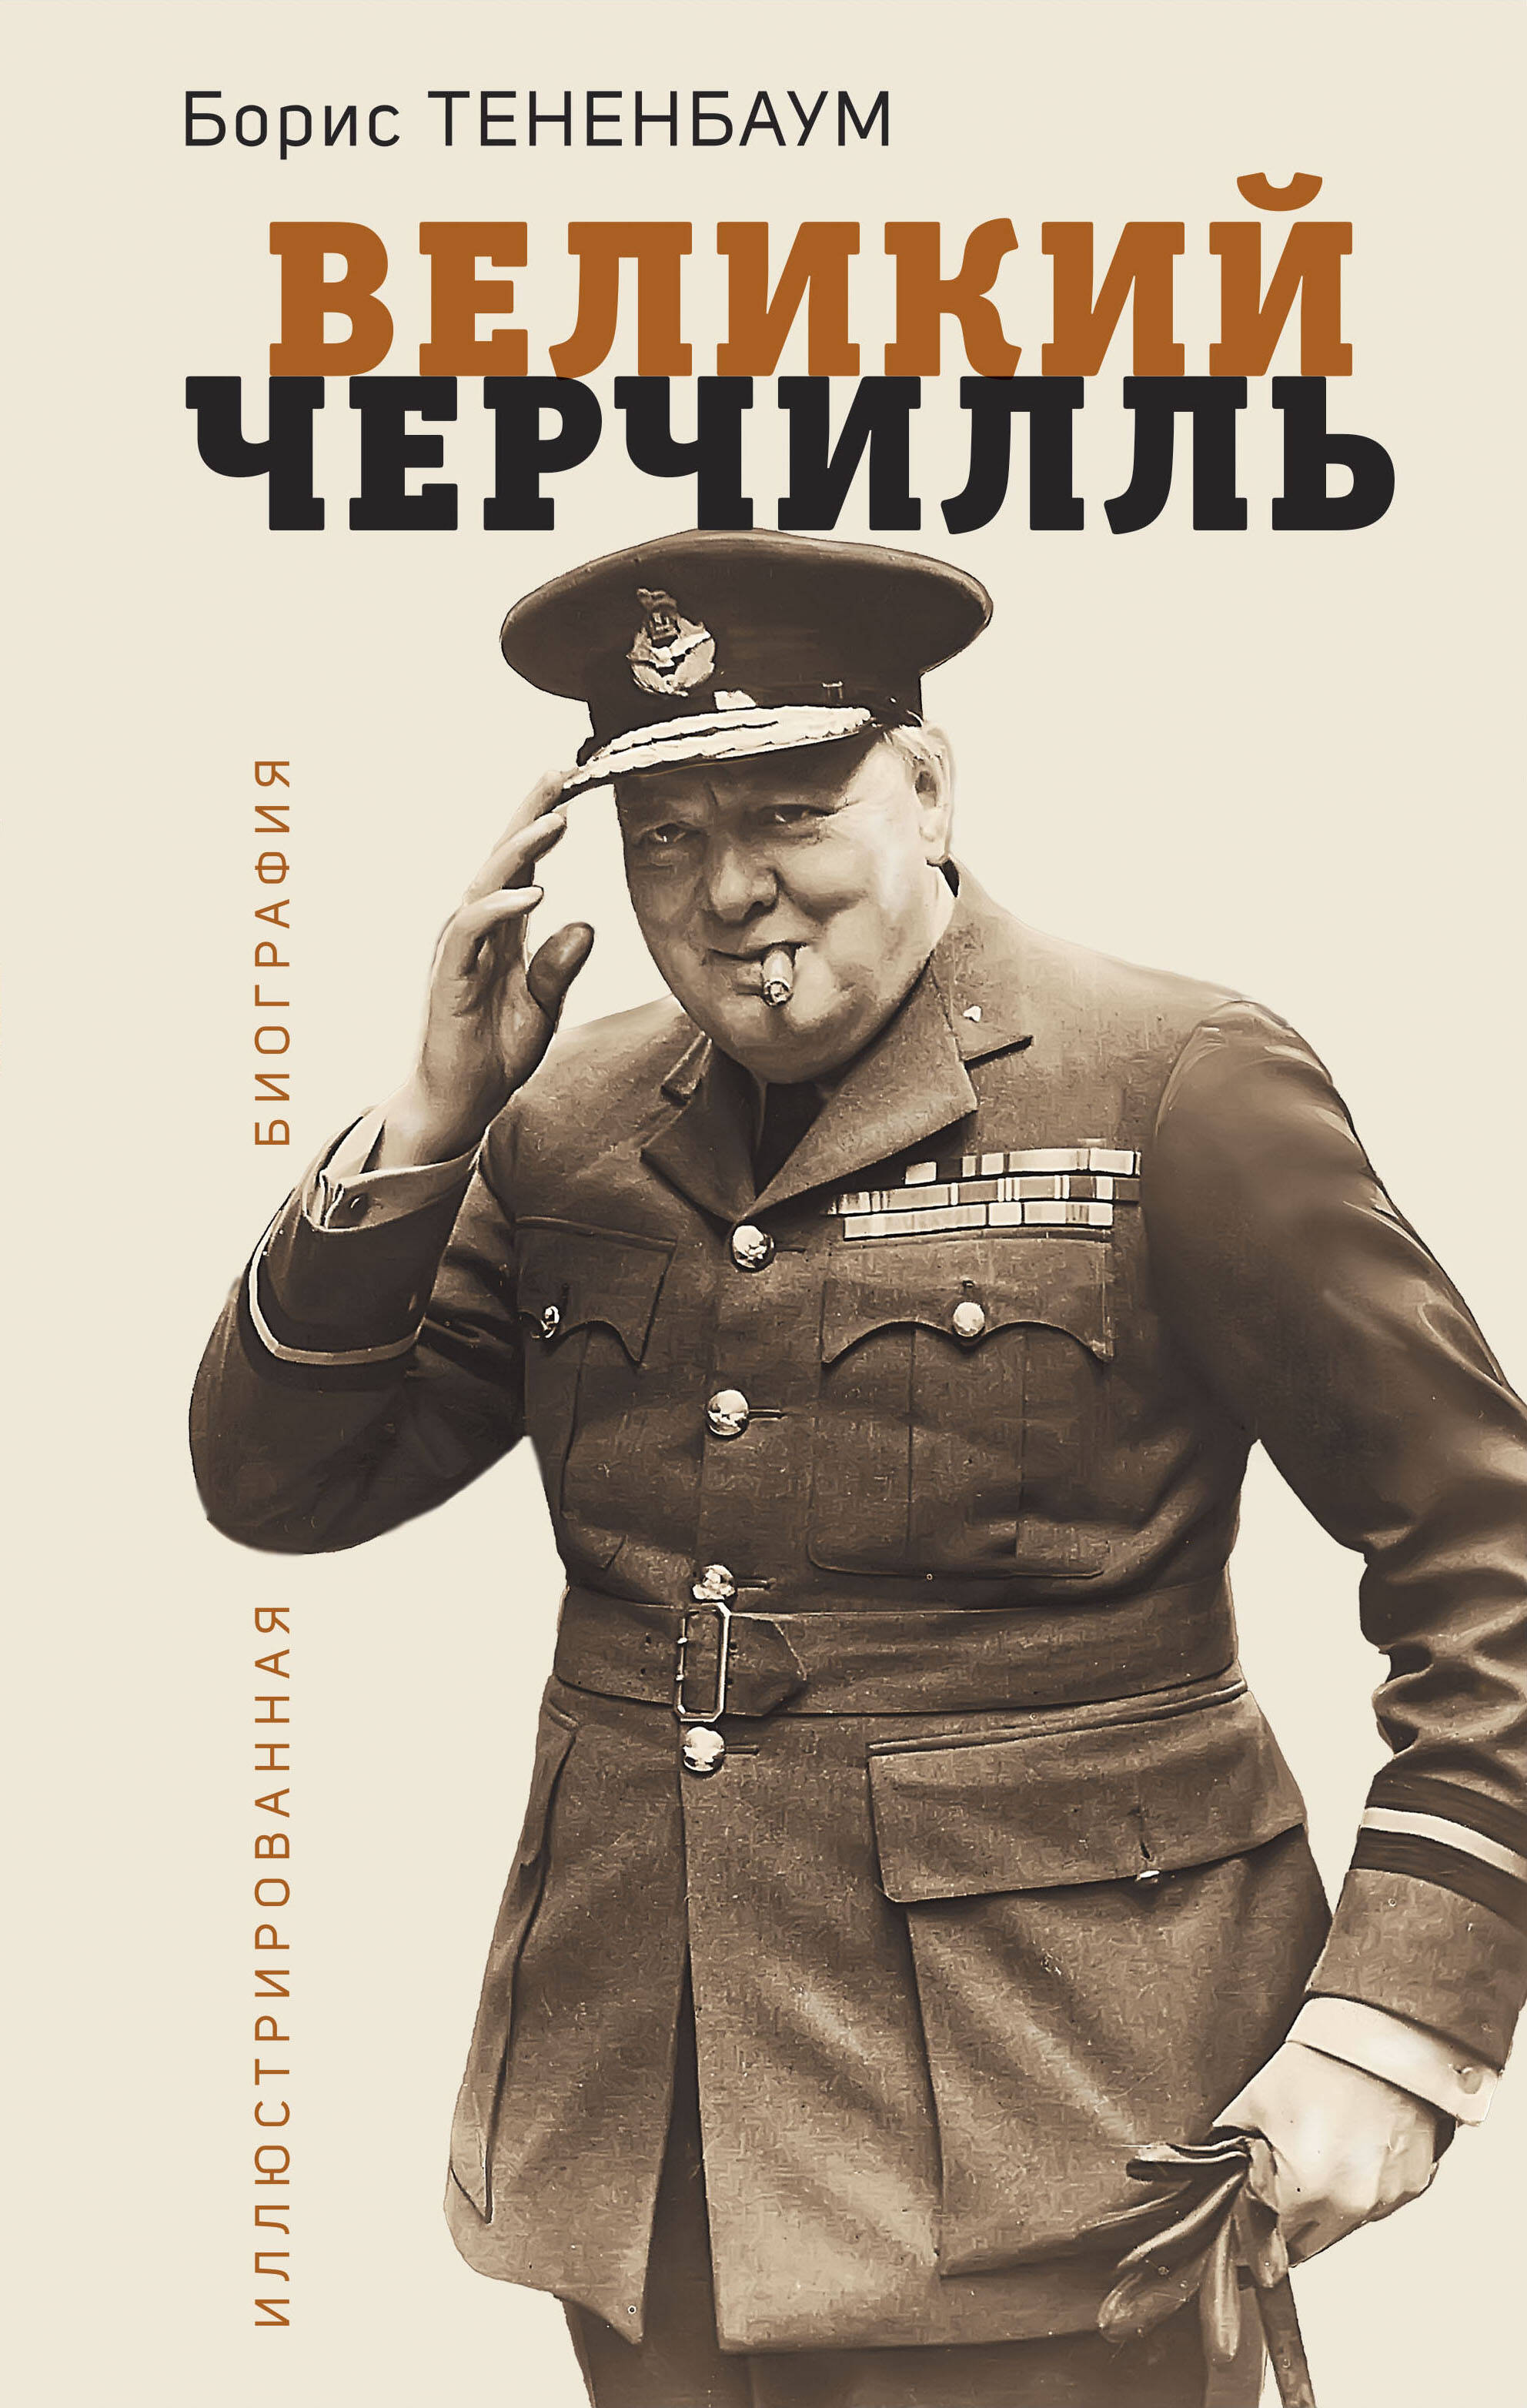 Тененбаум Борис - Великий Черчилль. Иллюстрированная биография